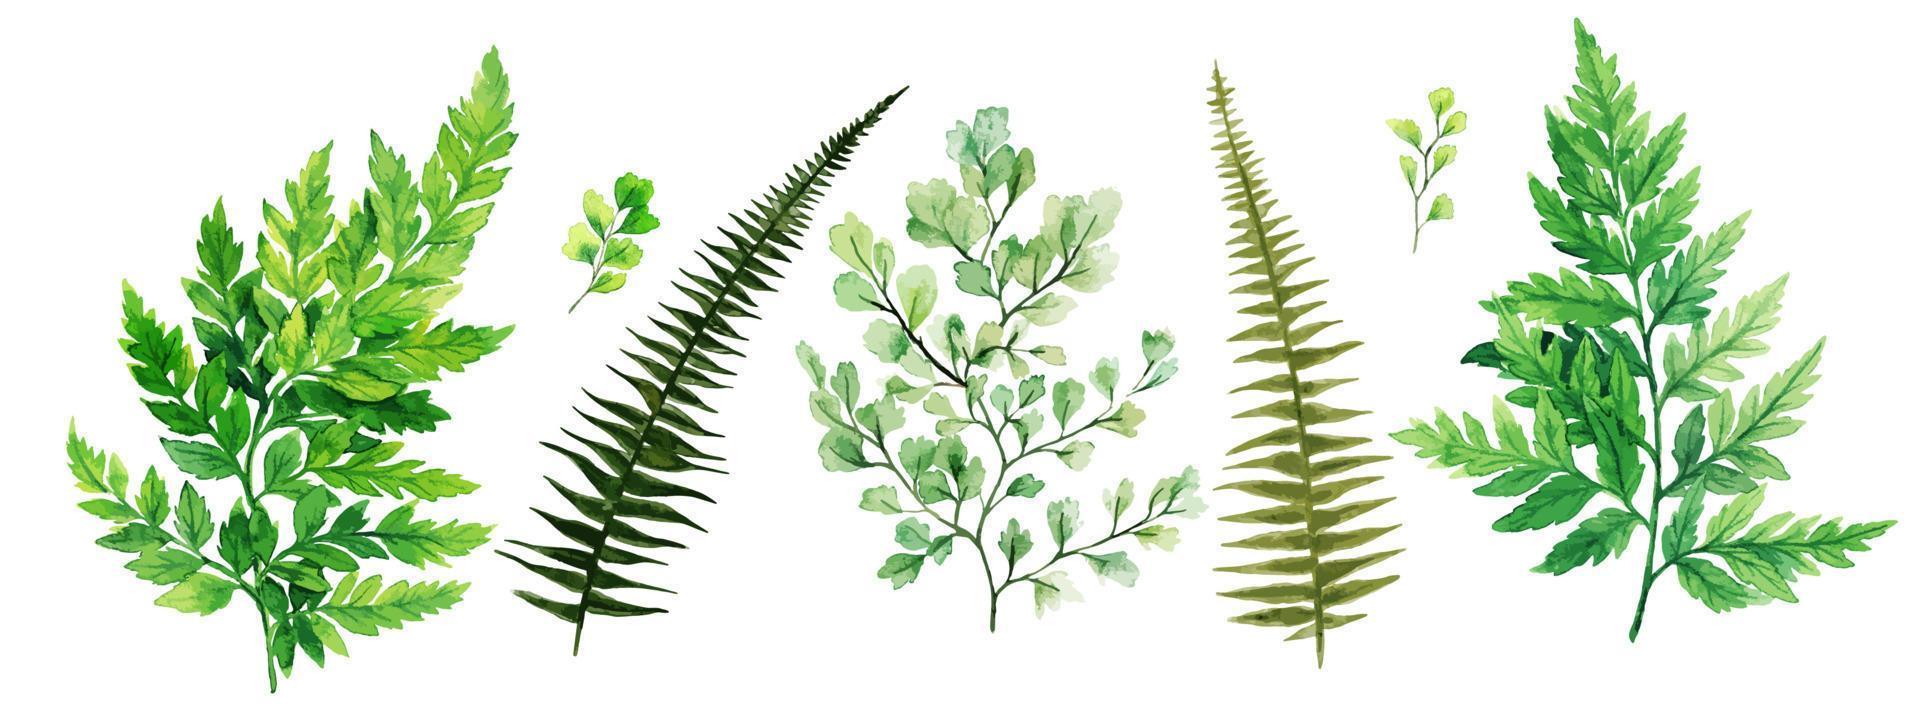 vild flora, ormbunkar och adiantum, akvarell ljus grönska samling, handritad vektorillustration. vektor